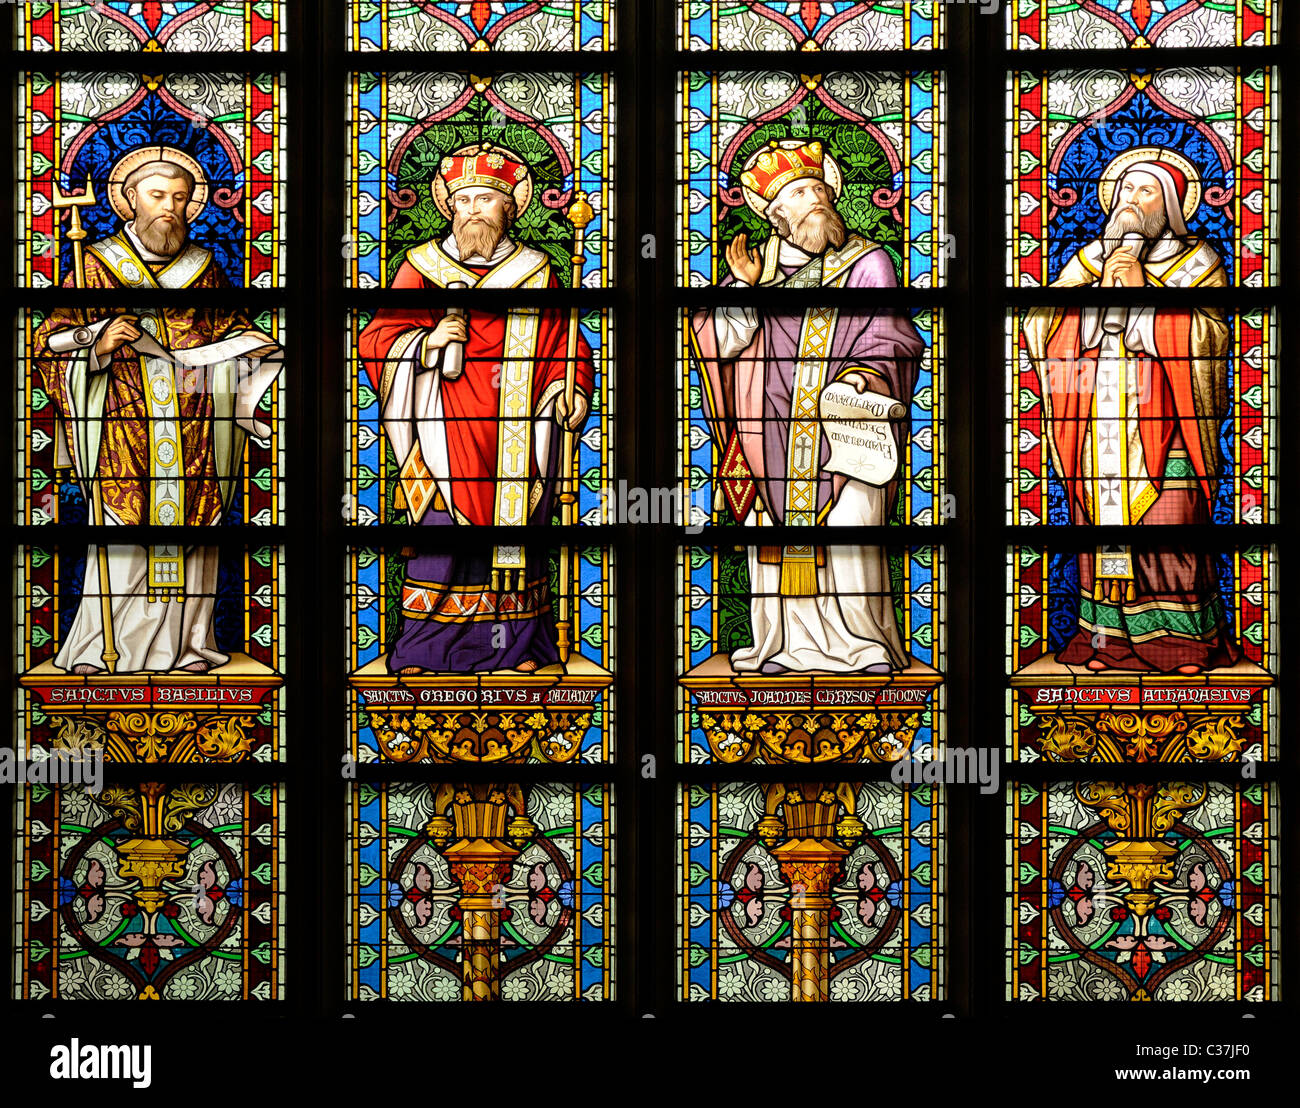 Den Bosch ( 's Hertogenbosch) Netherlands. St Janskathedral (1336-1550; Gothic) Stained Glass Window Stock Photo